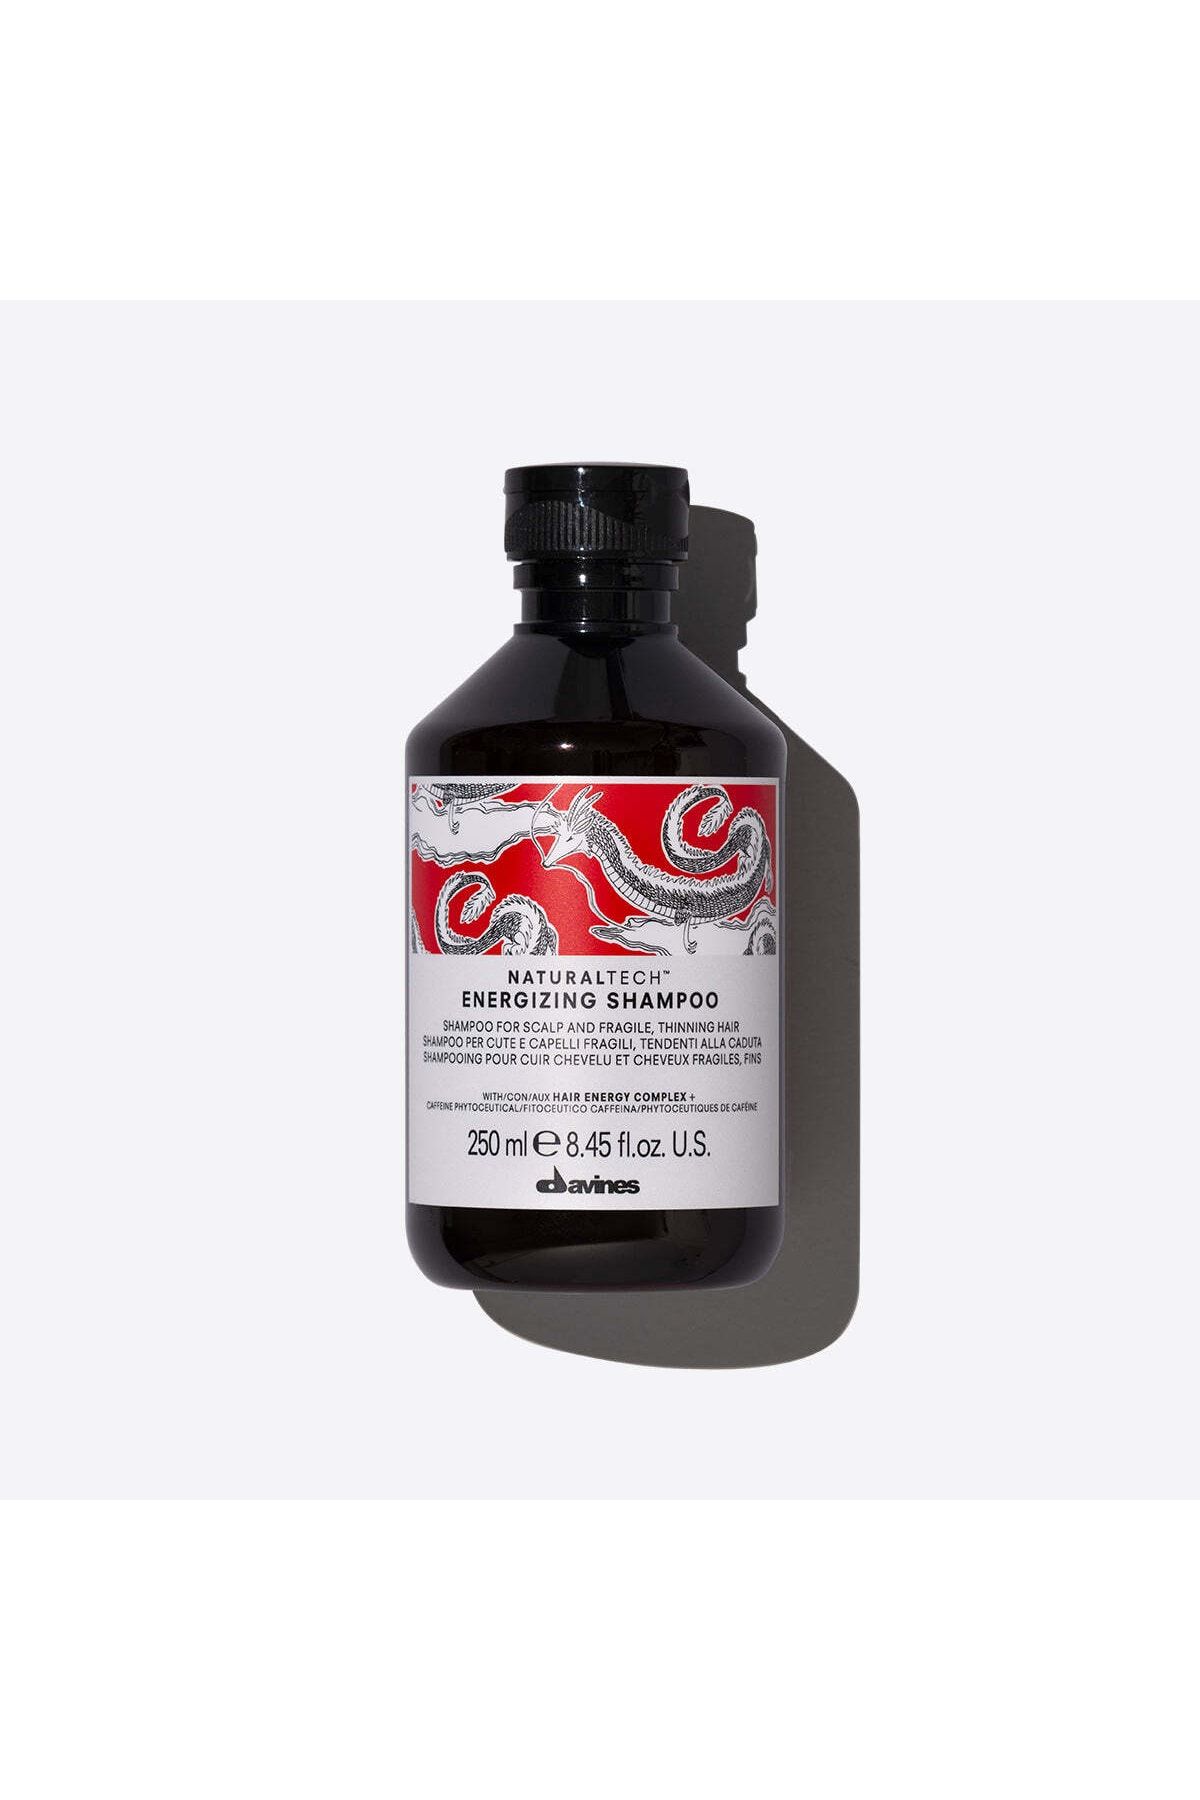 Davines Vegan Naturaltech™ Energizing Shampoo Dolgunlaştırıcı Şampuan 250ml 71252 8004608255505.